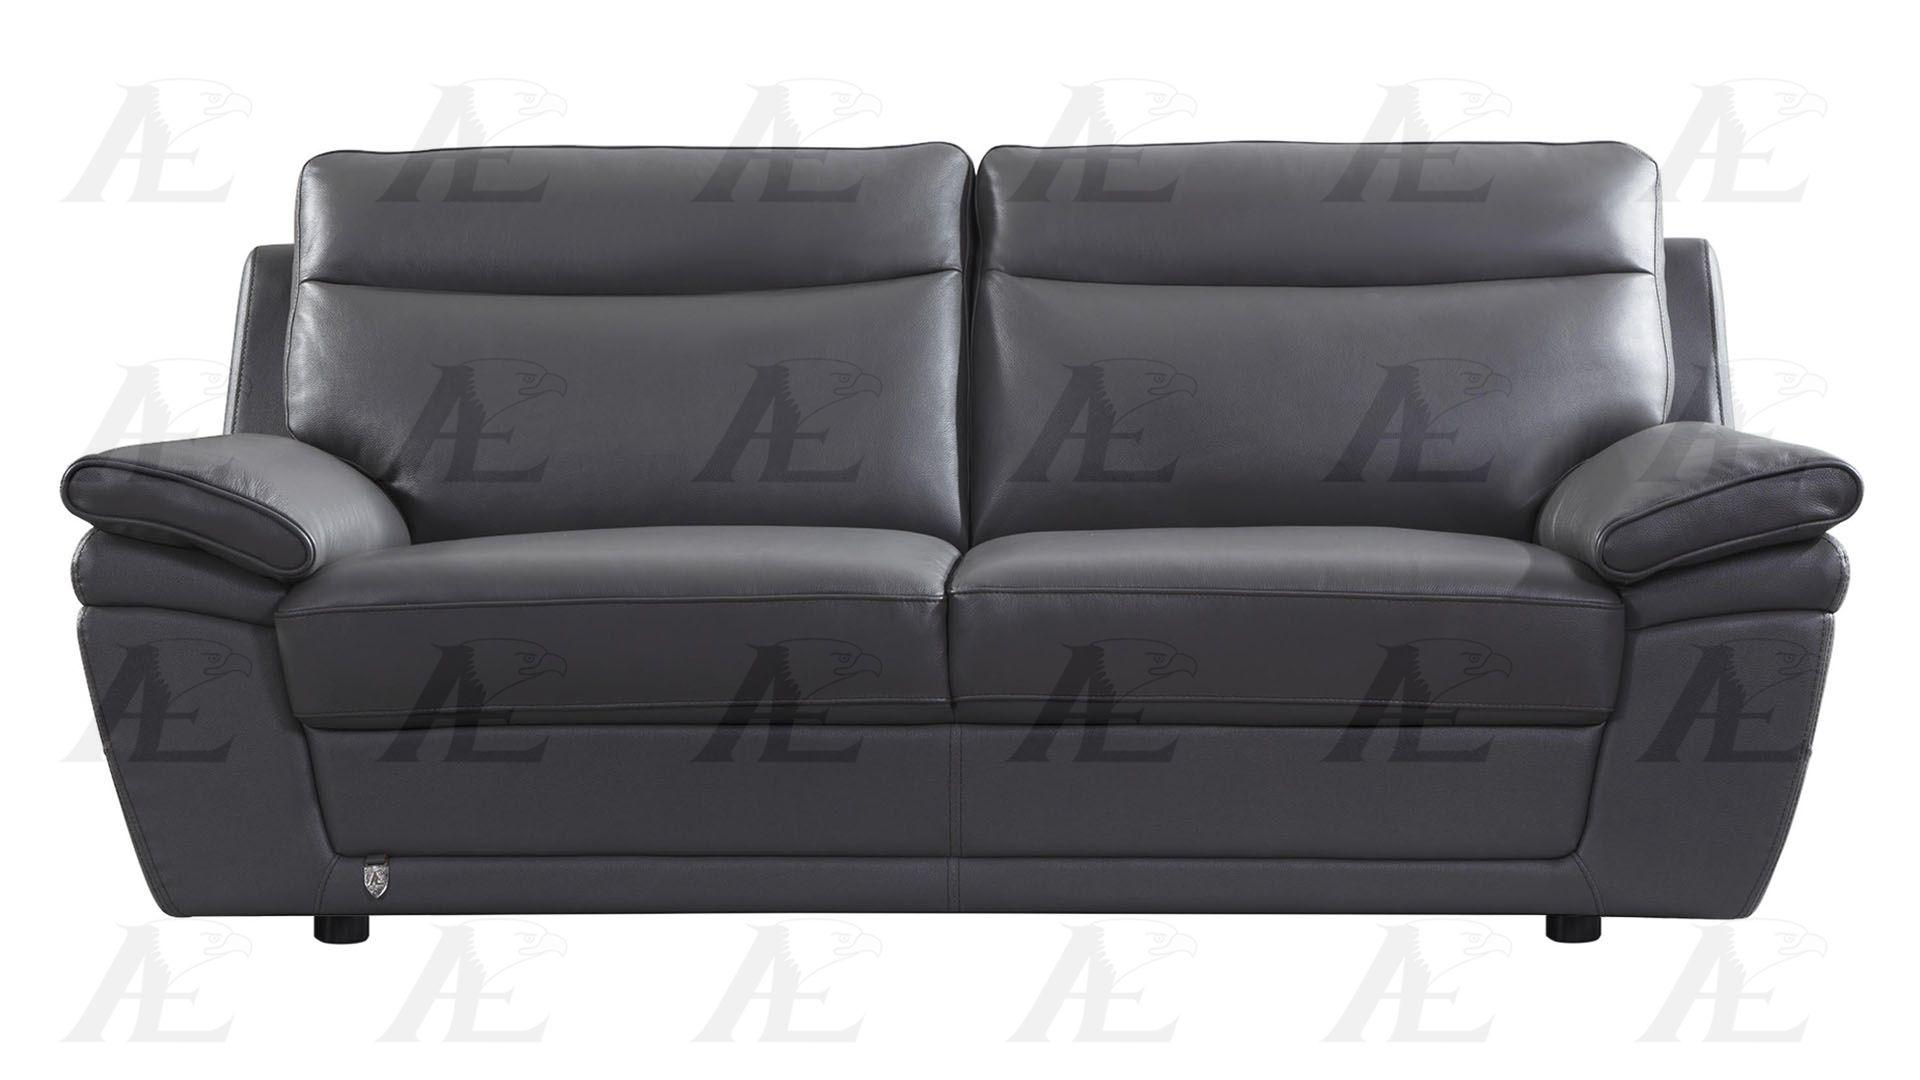 

    
EK092-GR-SF American Eagle Furniture Sofa
